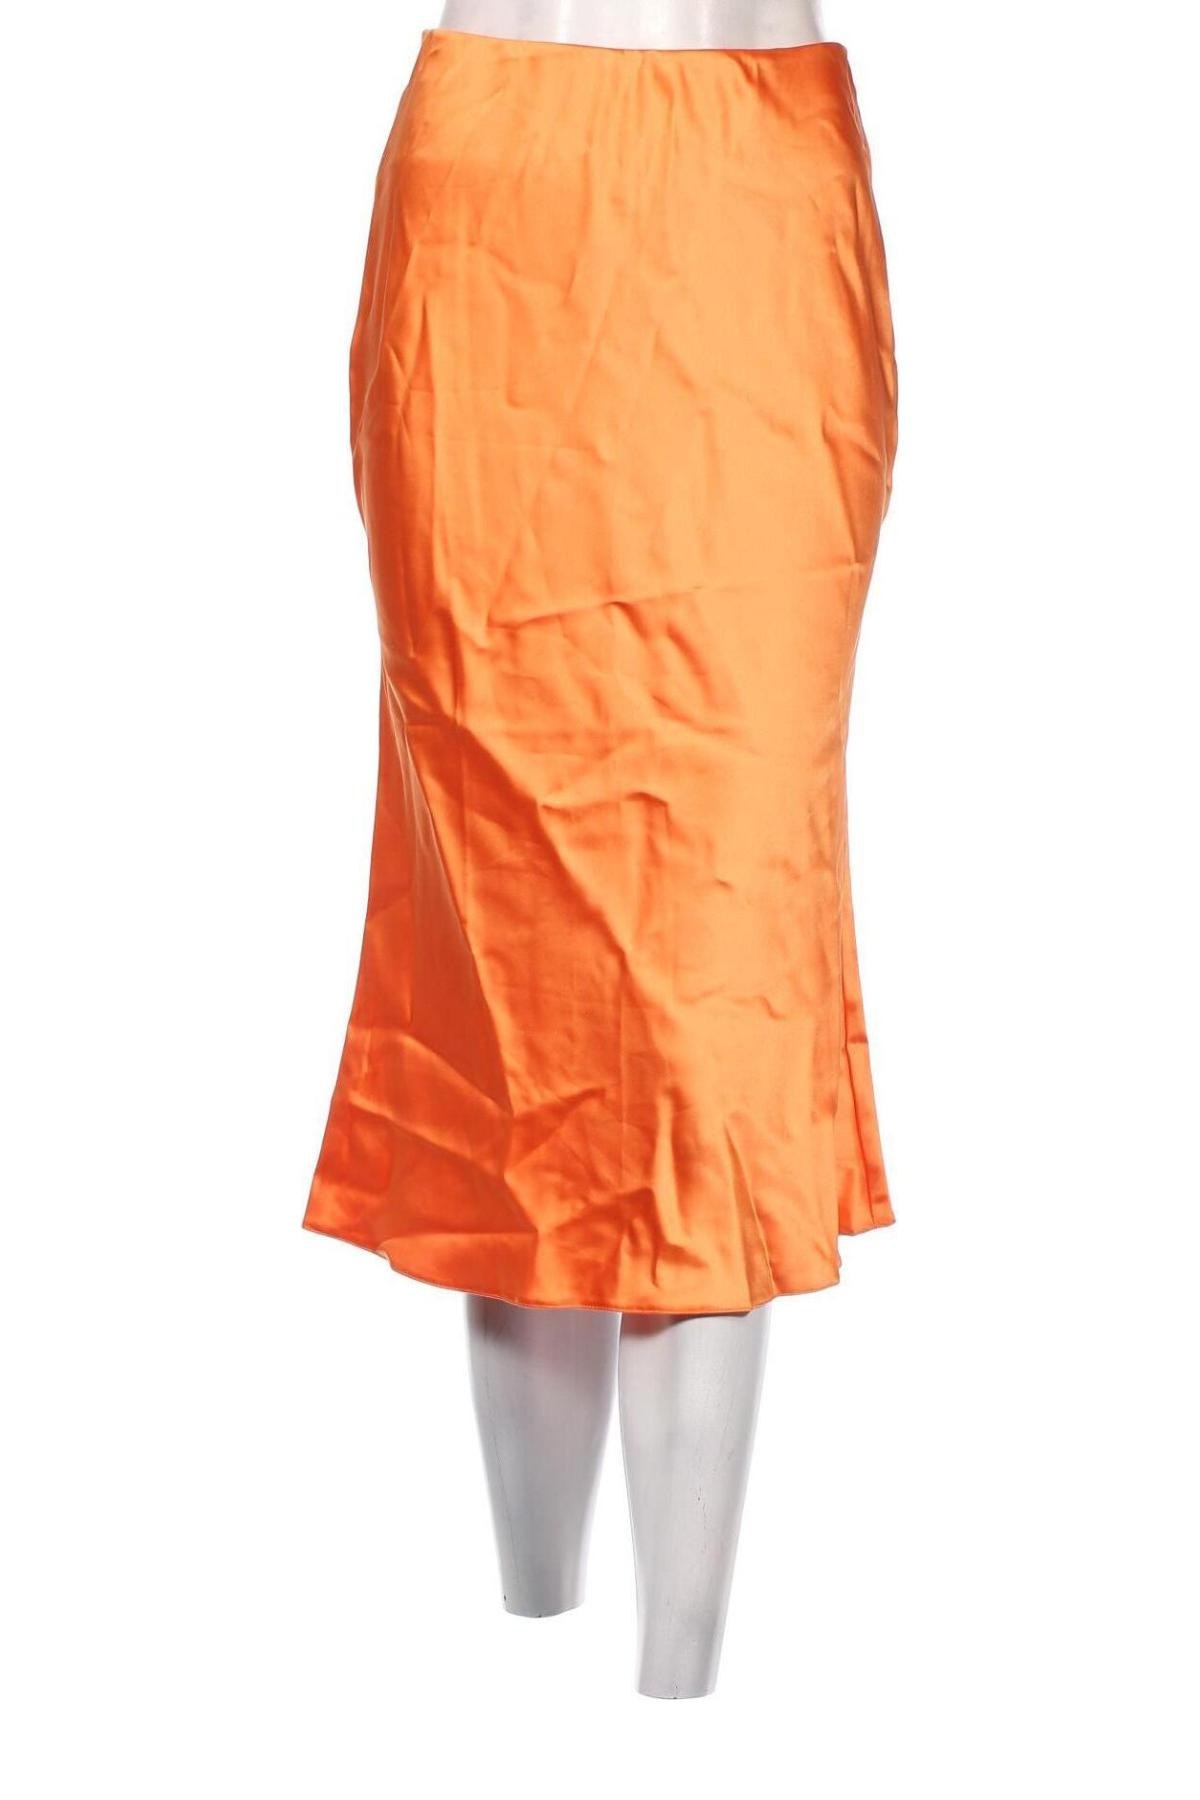 Φούστα Miss Selfridge, Μέγεθος M, Χρώμα Πορτοκαλί, 96% πολυεστέρας, 4% ελαστάνη, Τιμή 29,69 €